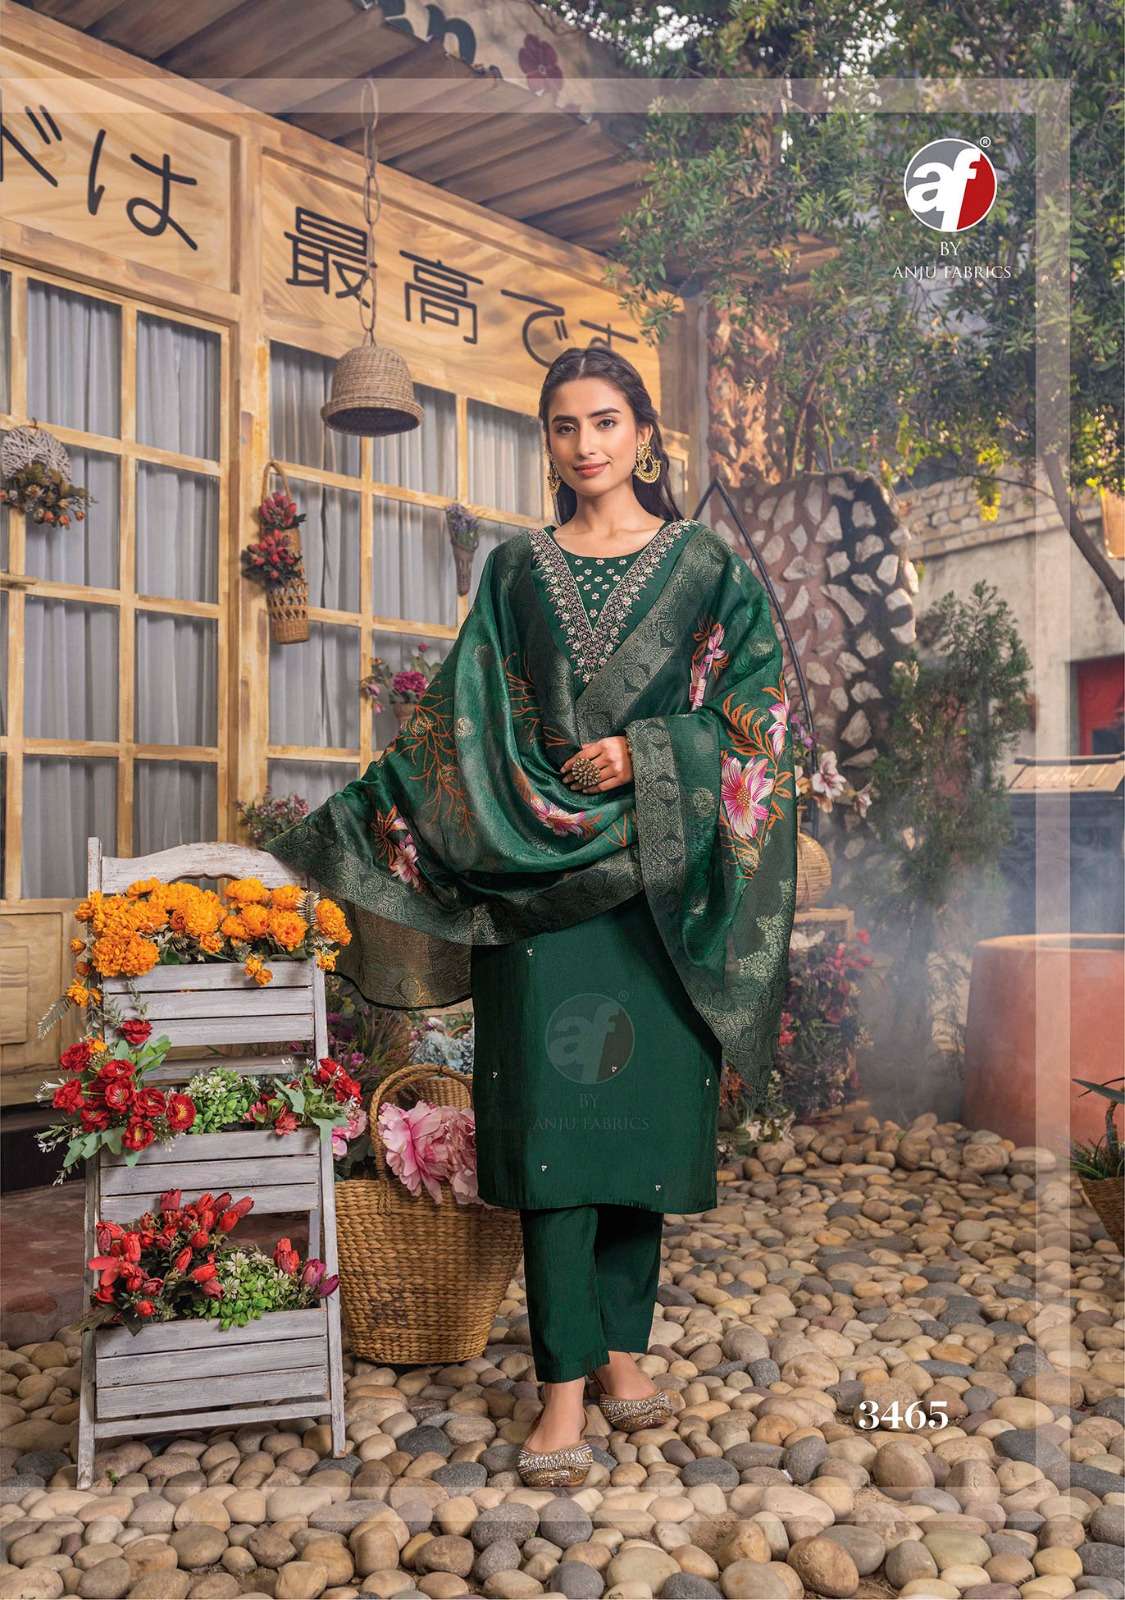 Anju Fabrics Shararat vol - 5 Kurti Wholesale catalog